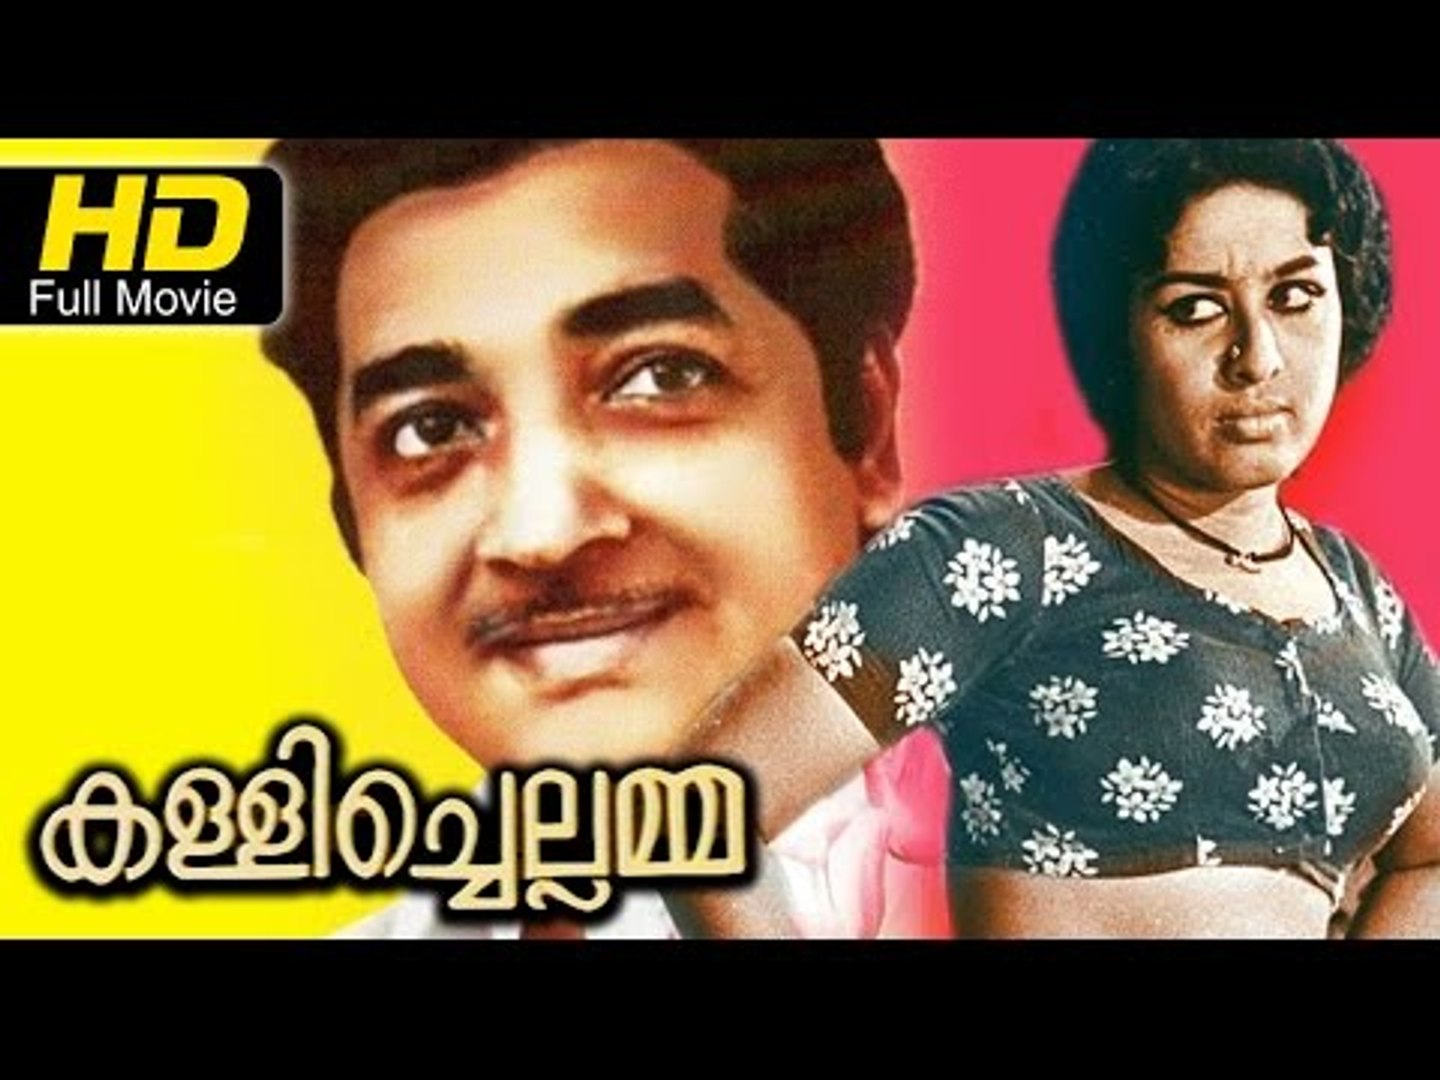 Kallichellamma Malayalam Full HD Movie | #Drama | Prem Nazir, Sheela | Latest Malayalam Movies